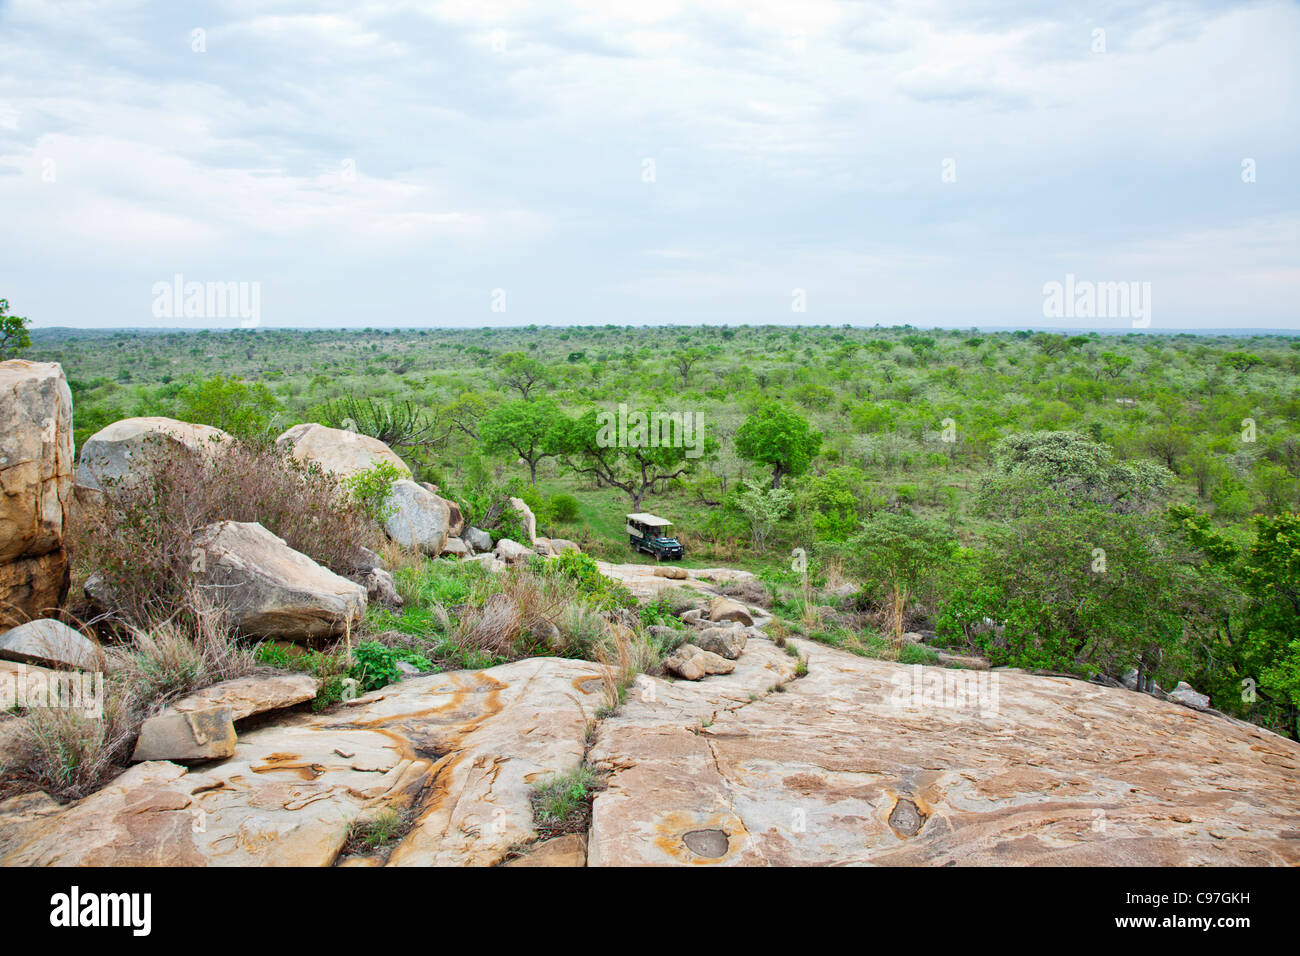 Un paisaje de la sabana arbolada tomada desde un granito koppie en el sur del Parque Nacional Kruger. Foto de stock